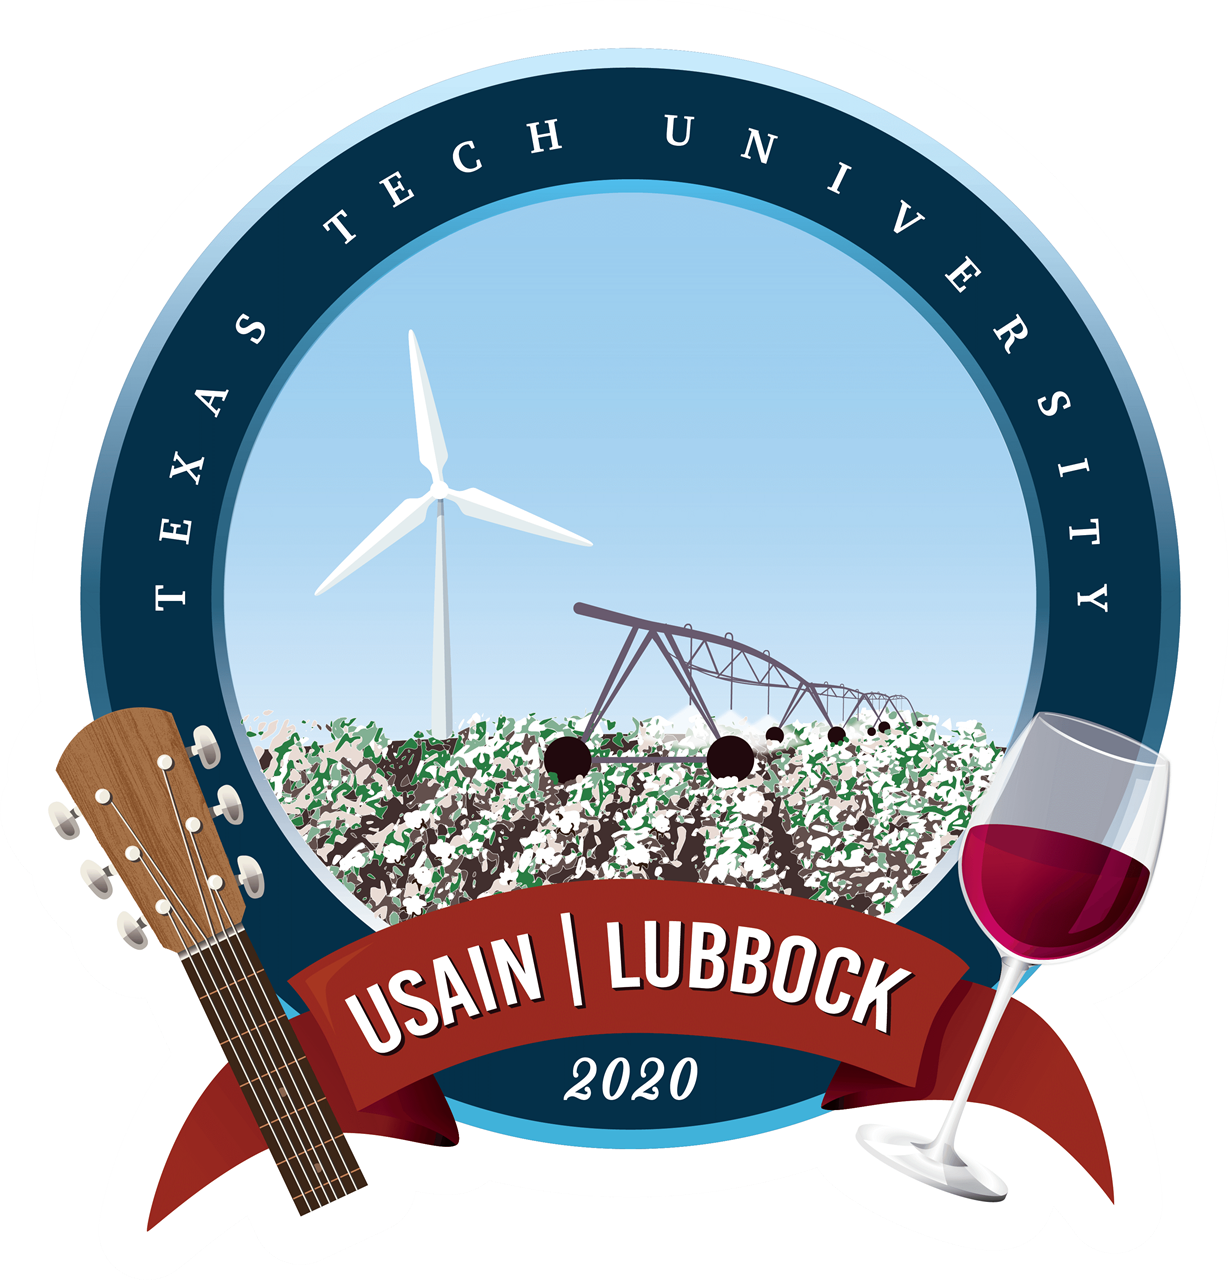 USAIN 2020 logo